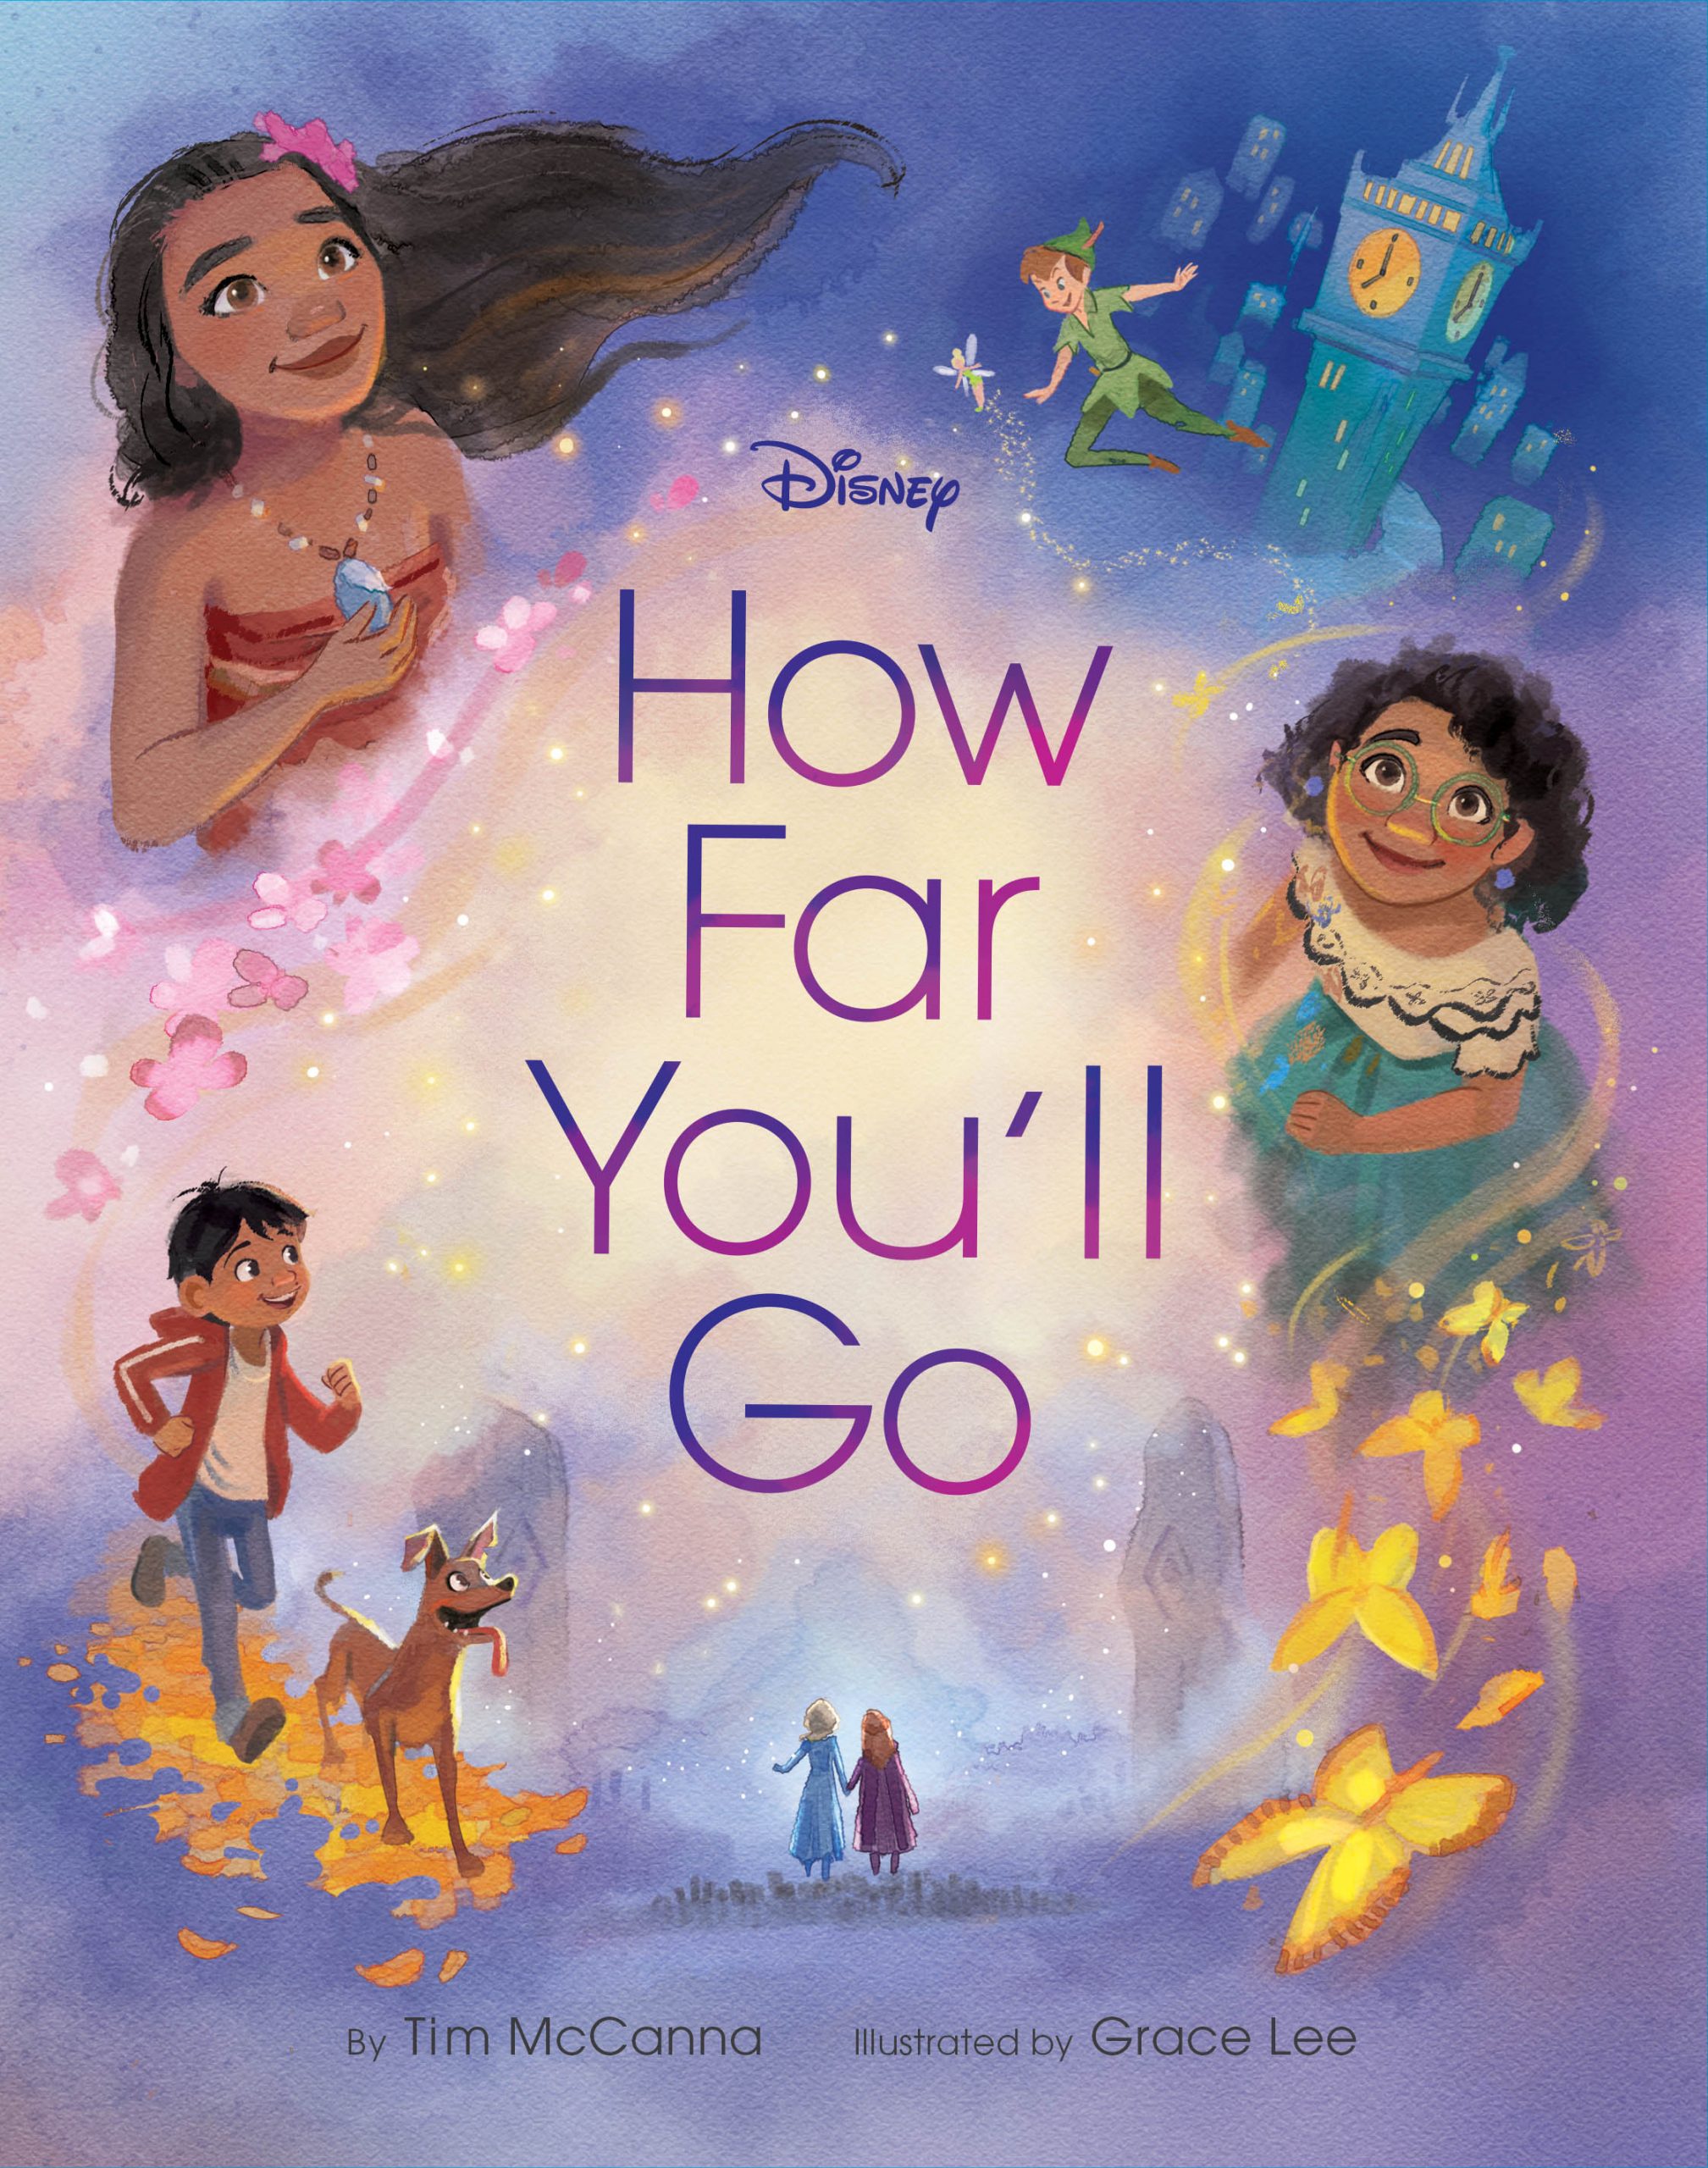 Disney Books for Children Ages 9-12 - Disney Publishing Worldwide